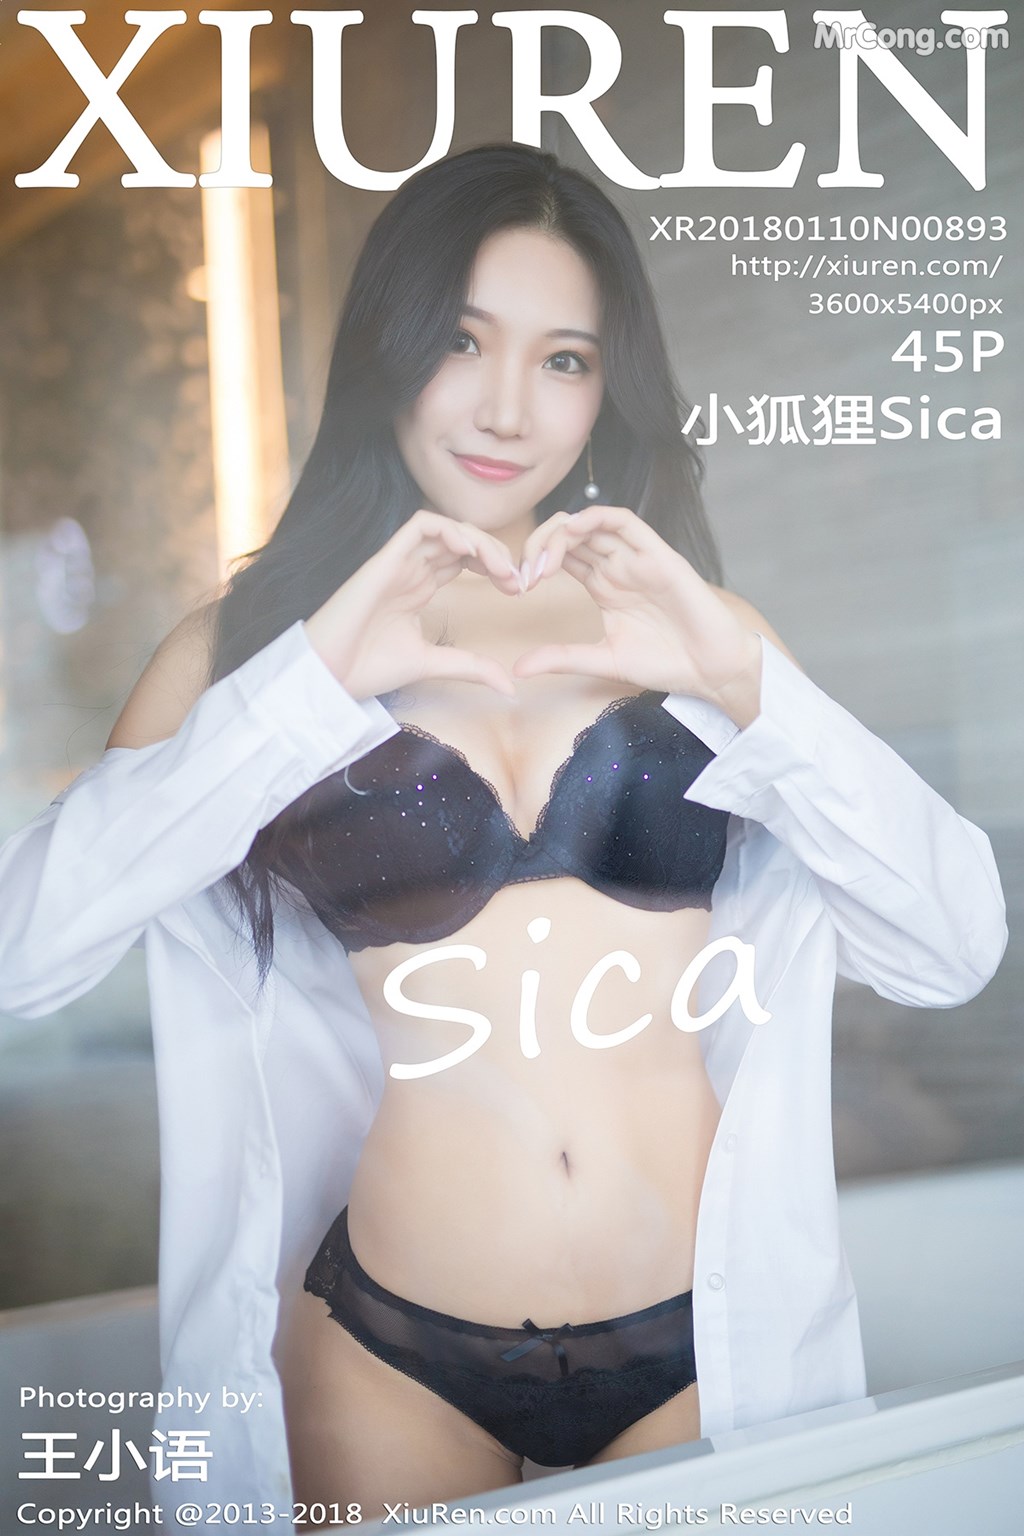 XIUREN No.893: Model Xiao Hu Li (小 狐狸 Sica) (46 photos) photo 1-0